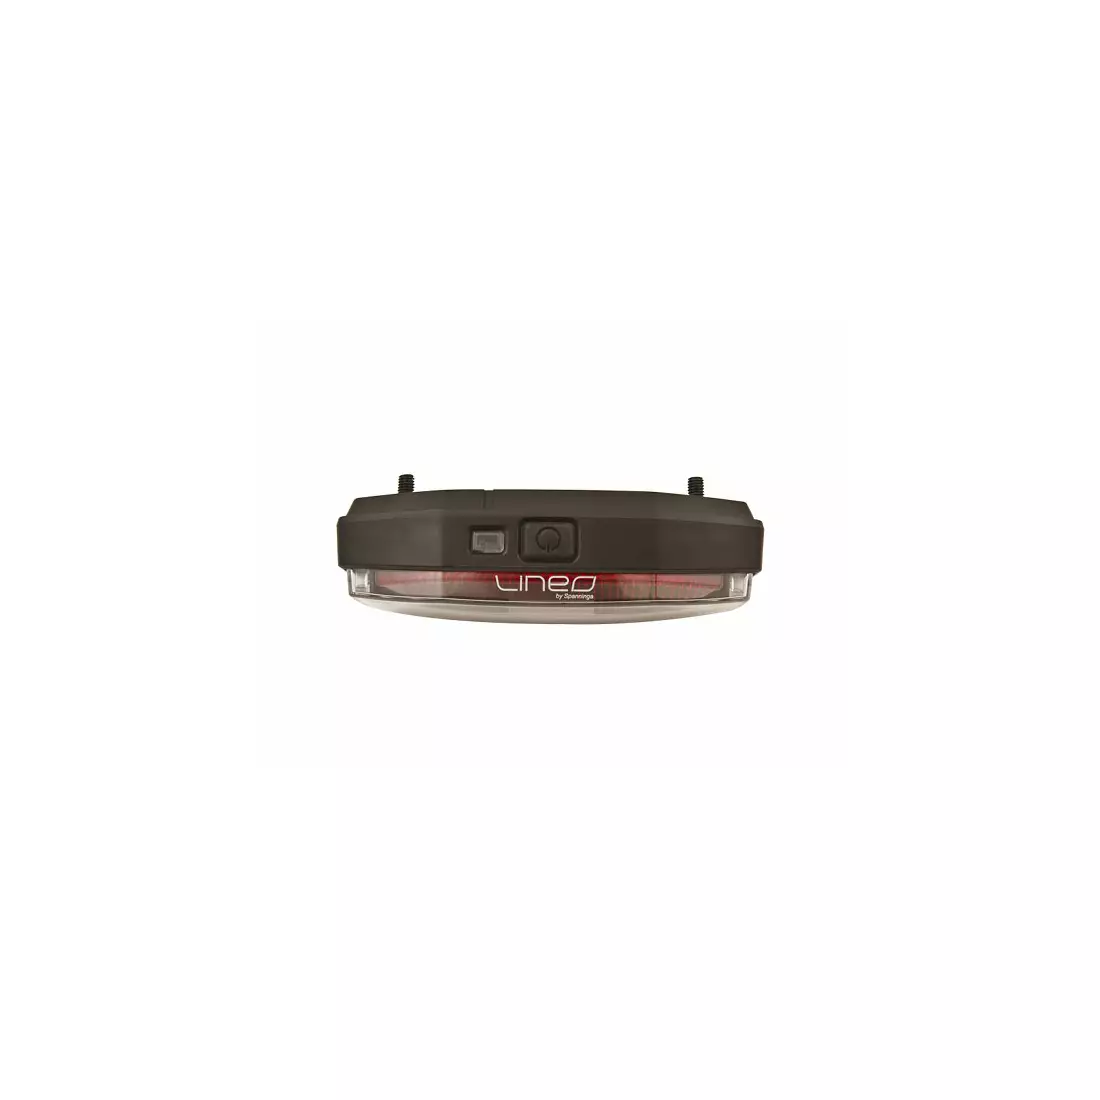 Zadní světlo na kufru SPANNINGA LINEO XB + baterie SNG-H056018